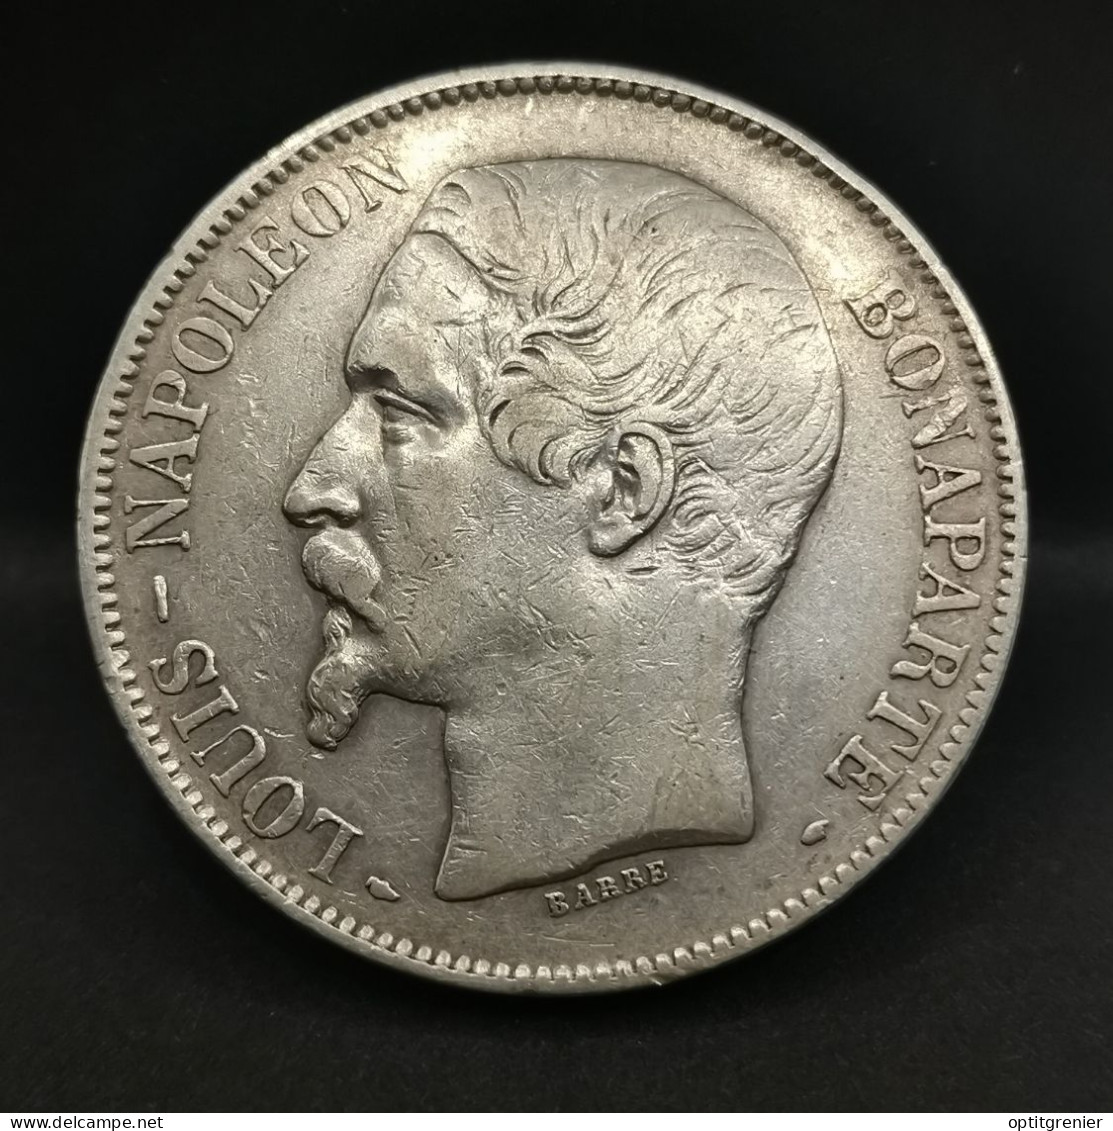 5 FRANCS ARGENT 1852 A PARIS LOUIS NAPOLEON BONAPARTE TETE NUE / FRANCE SILVER - 5 Francs